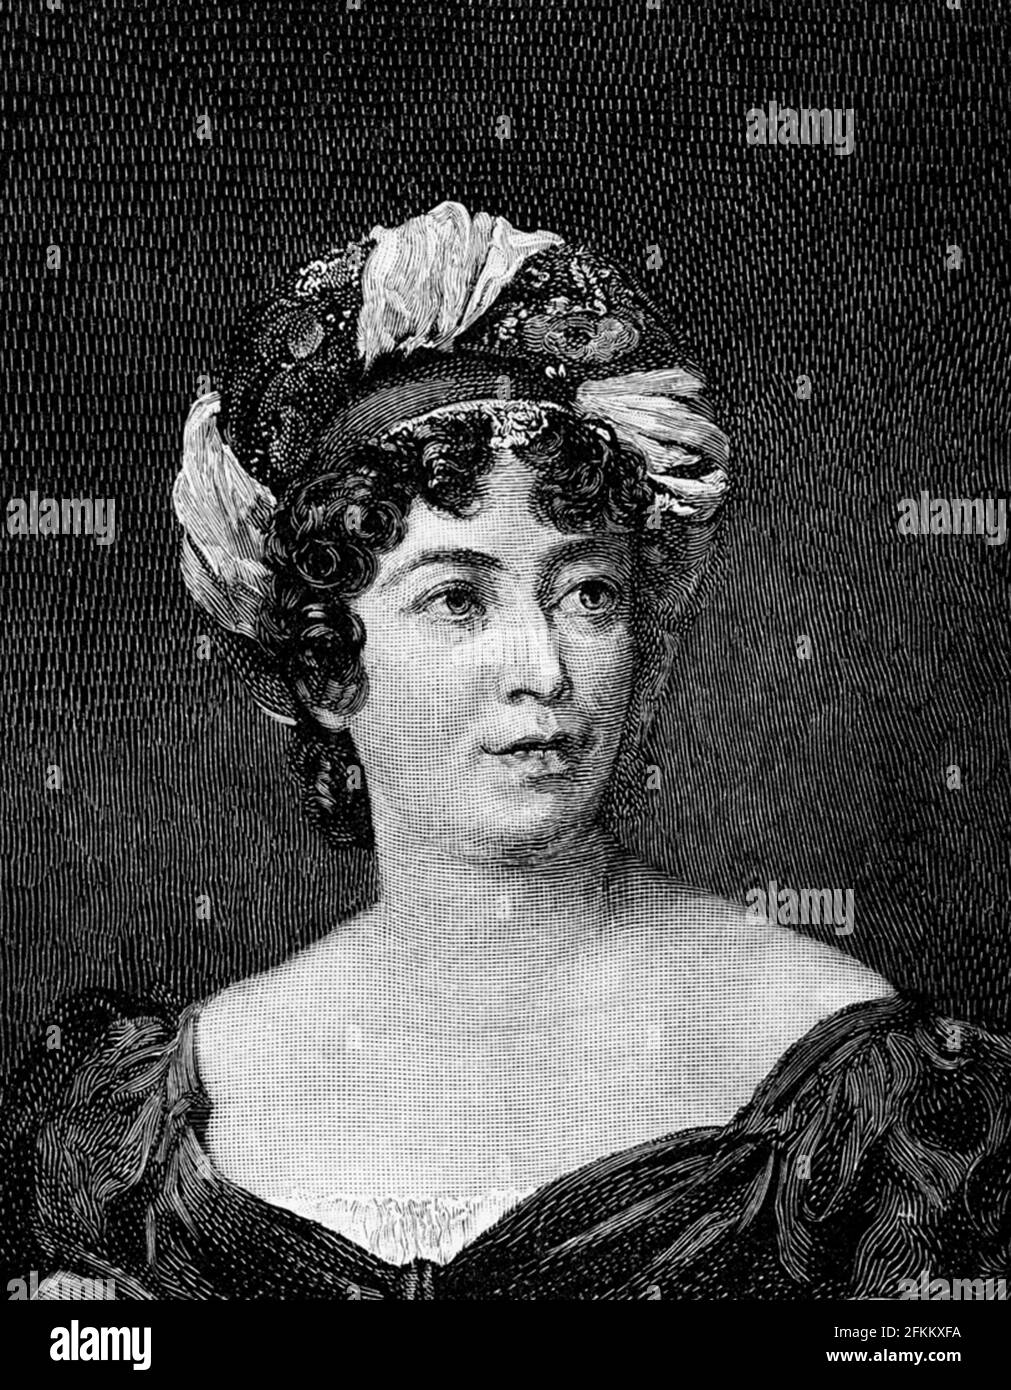 Anne Louise Germaine de Staël-Holstein (1766-1817), conocida comúnmente como Madame de Staël, fue una mujer francesa de letras y teorista político de origen geneván. Fue una voz de moderación en la Revolución Francesa y la era napoleónica hasta la Restauración Francesa. Foto de stock